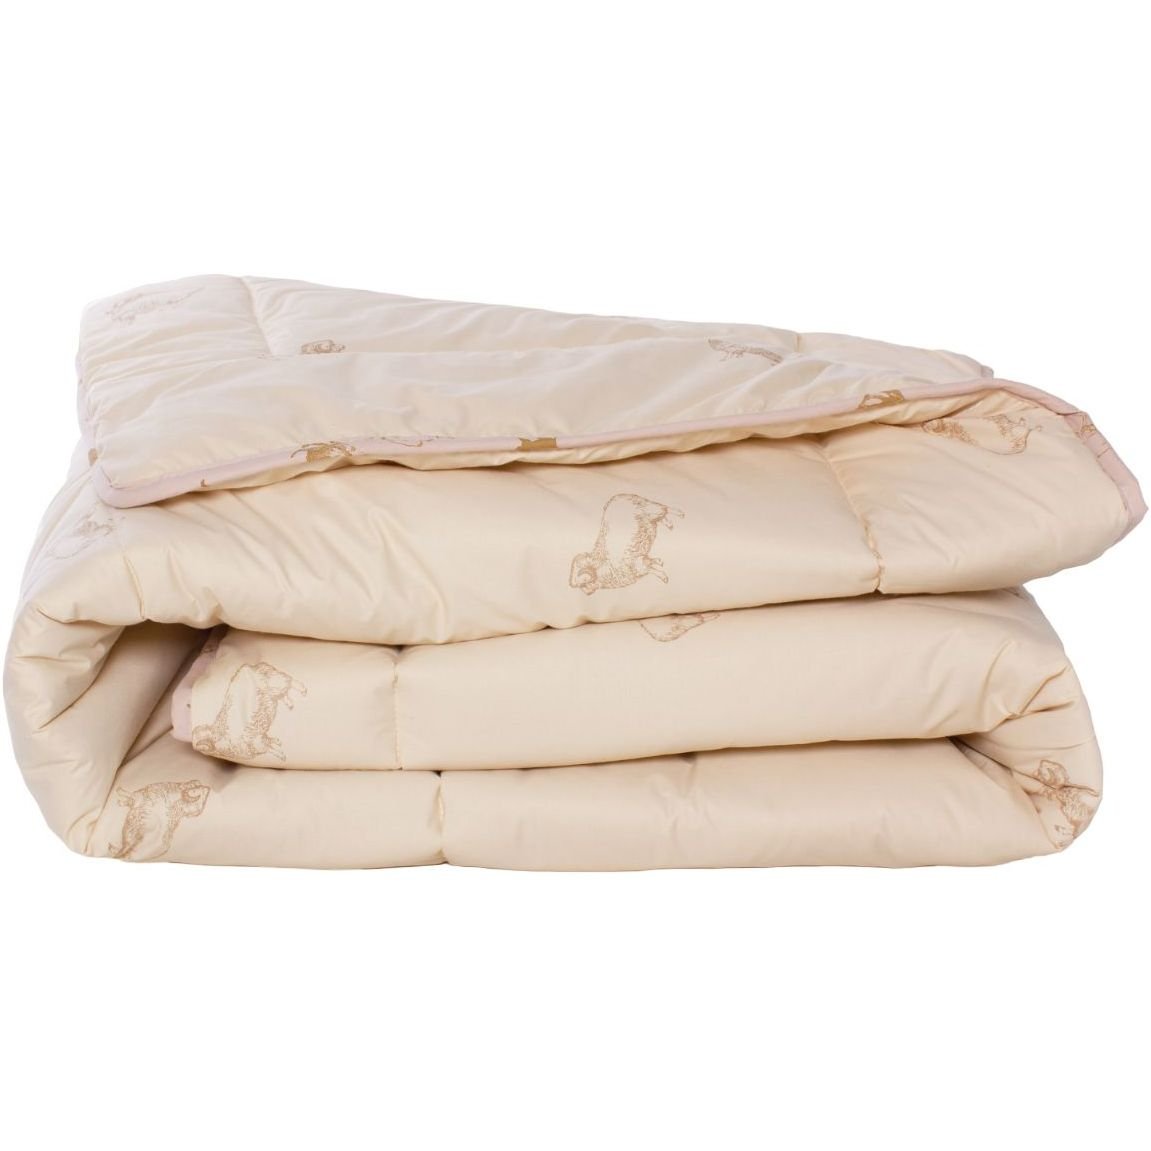 Одеяло шерстяное MirSon Gold Camel №023, демисезонное, 172x205 см, кремовое - фото 1